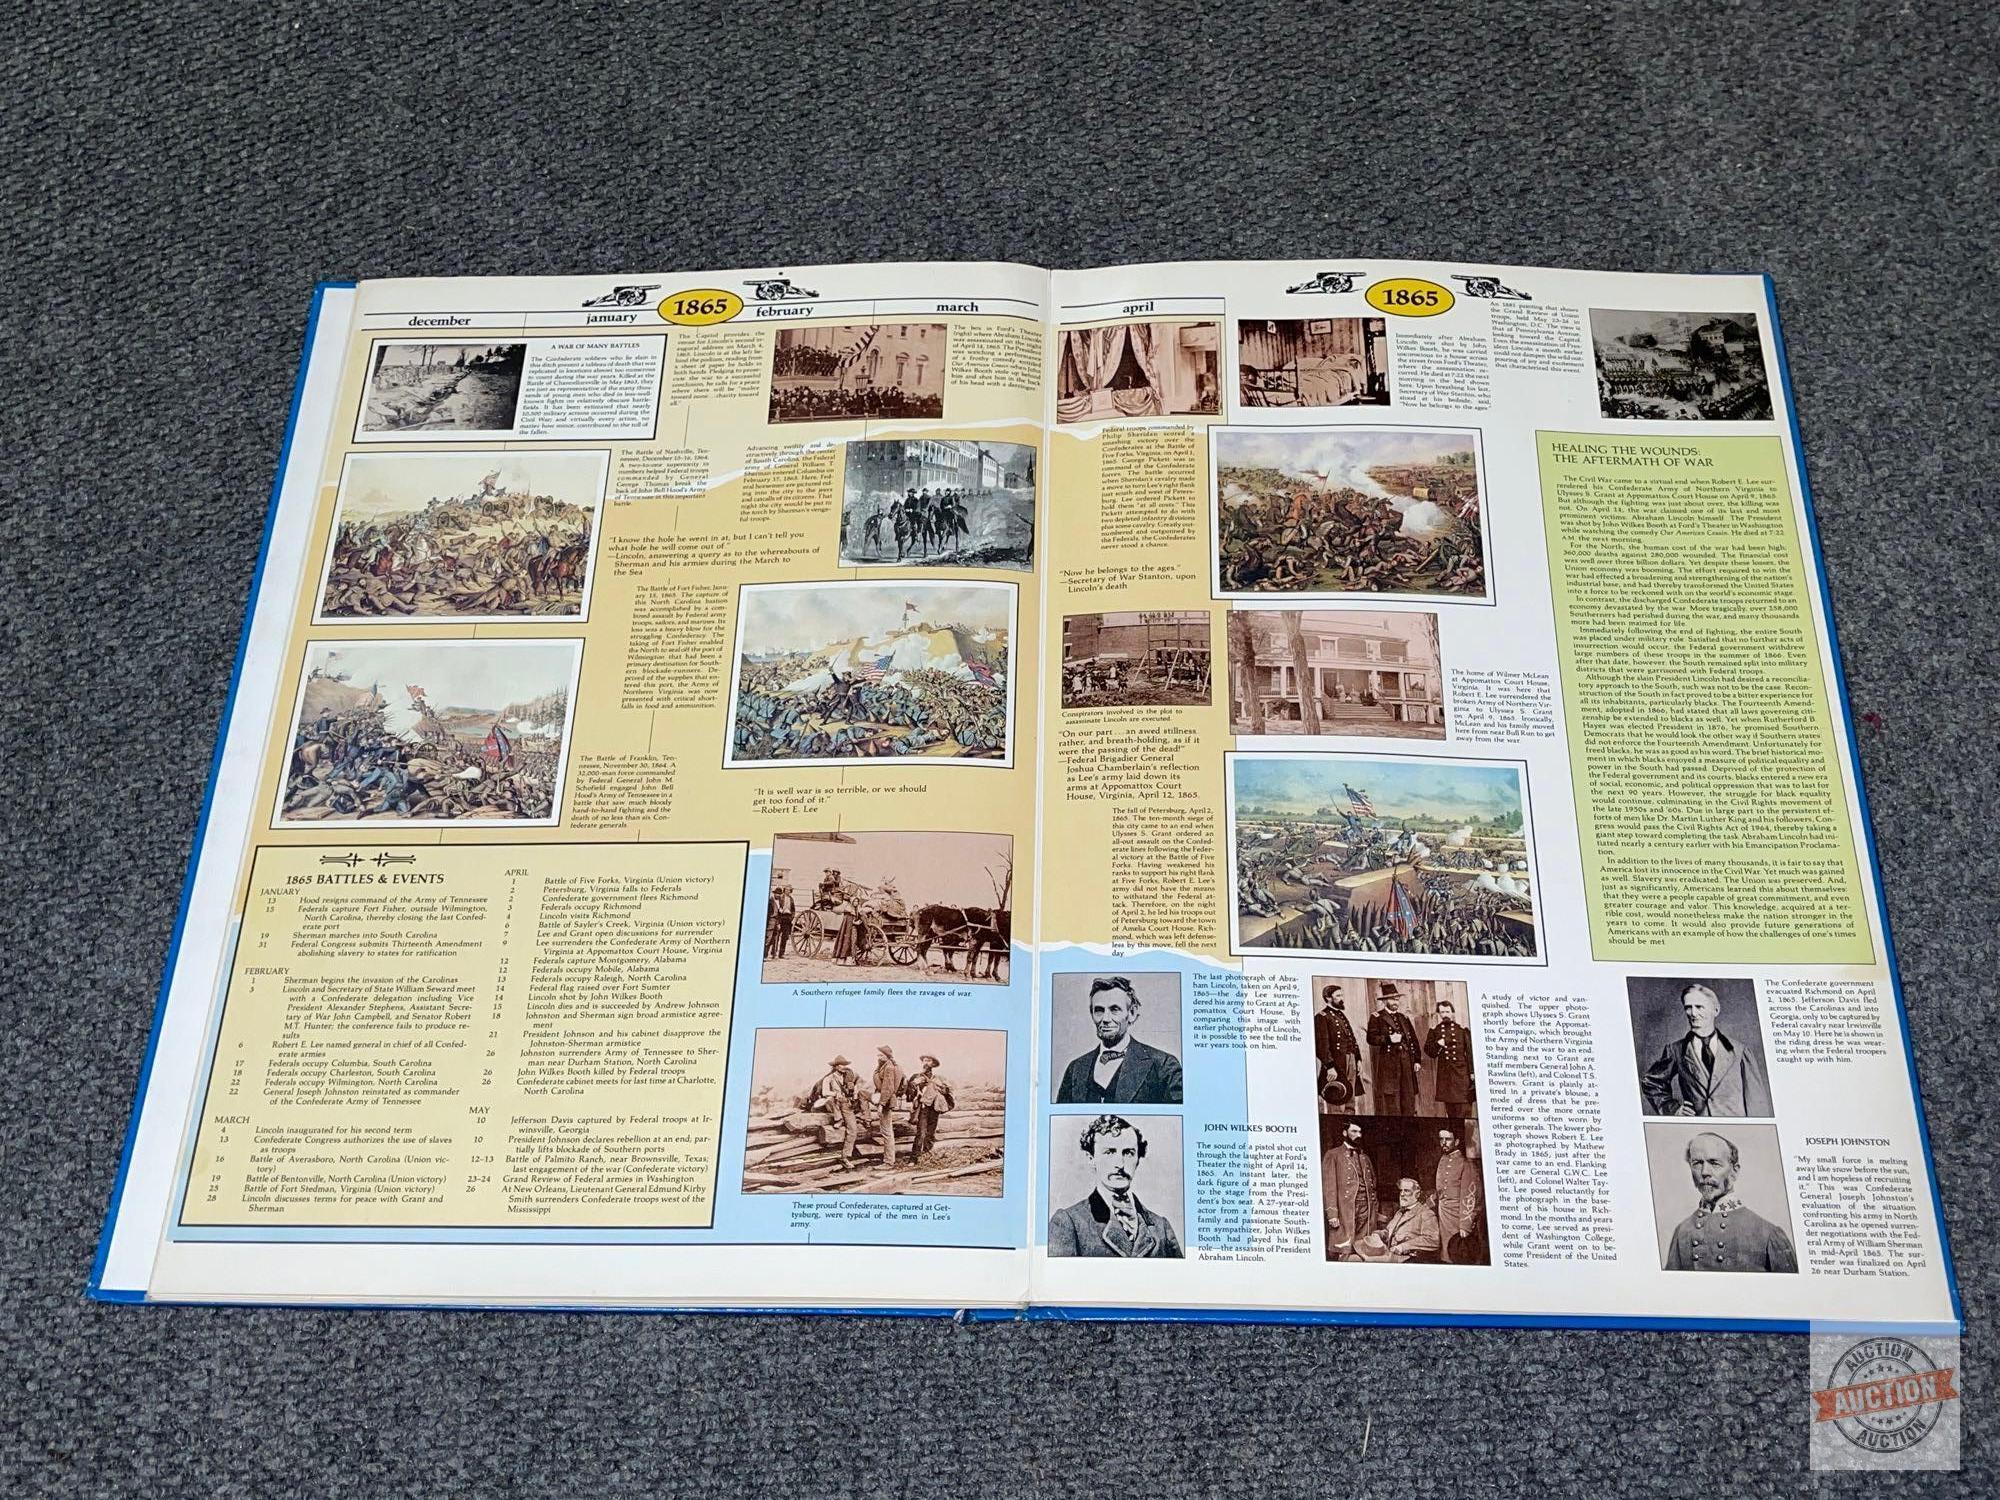 The Civil War Wall Chart, 1990, Louis Weber Publications